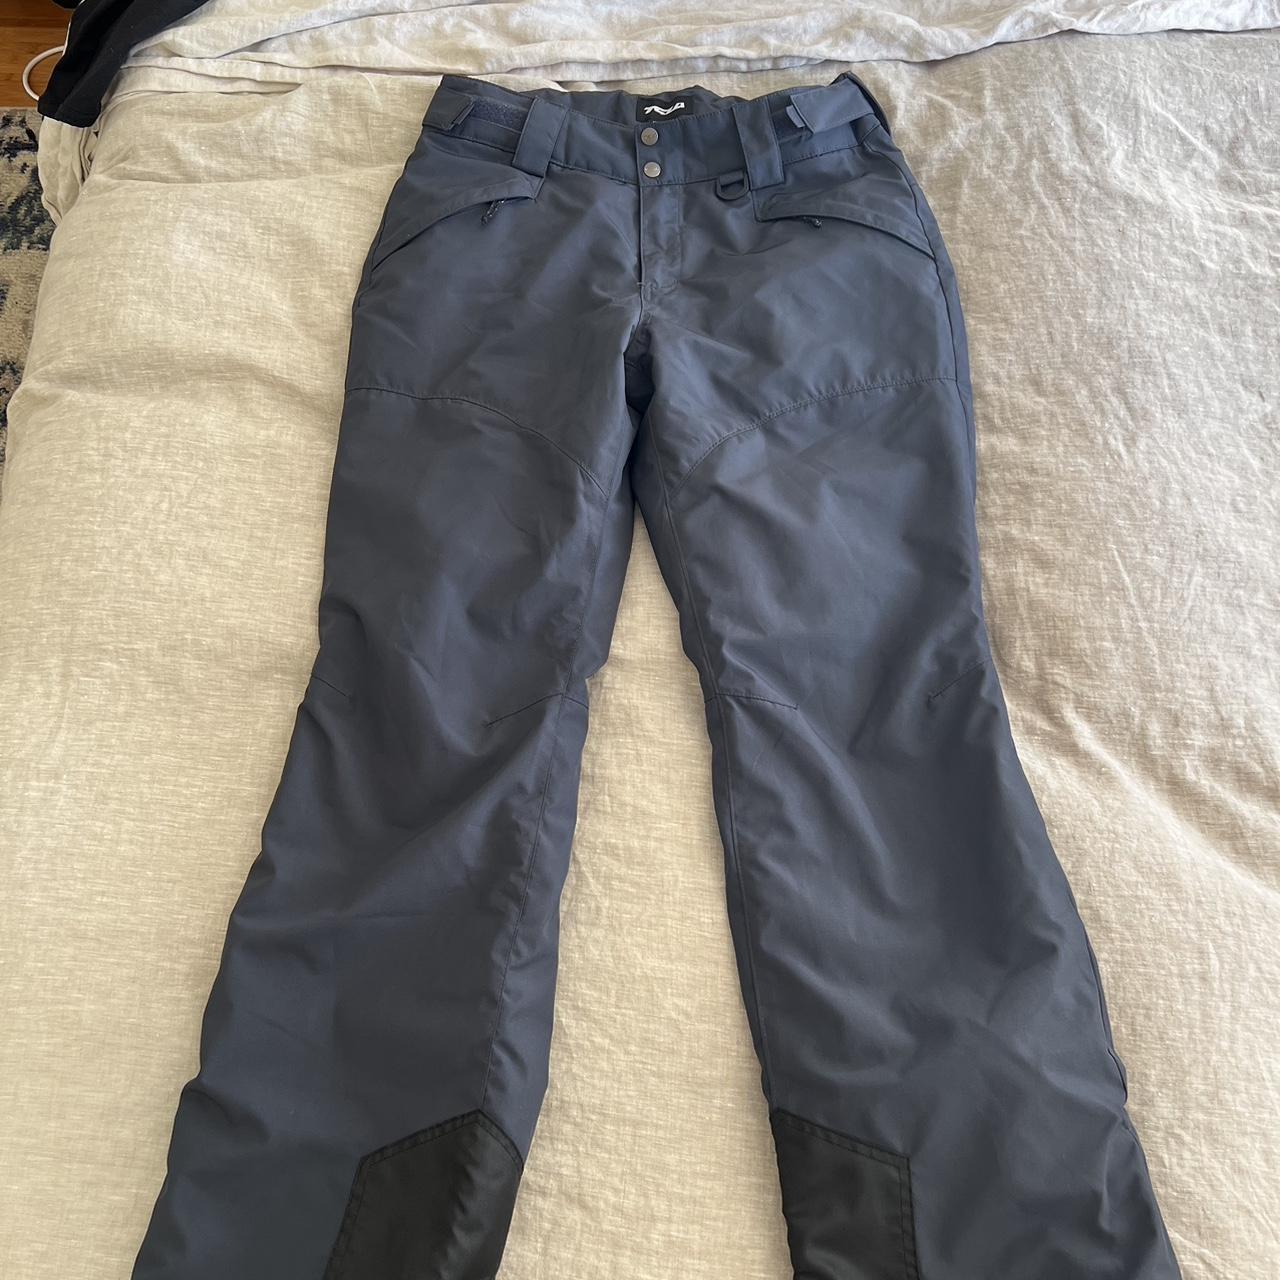 TSLA women’s ski pants - new no tag - size 8 - Depop